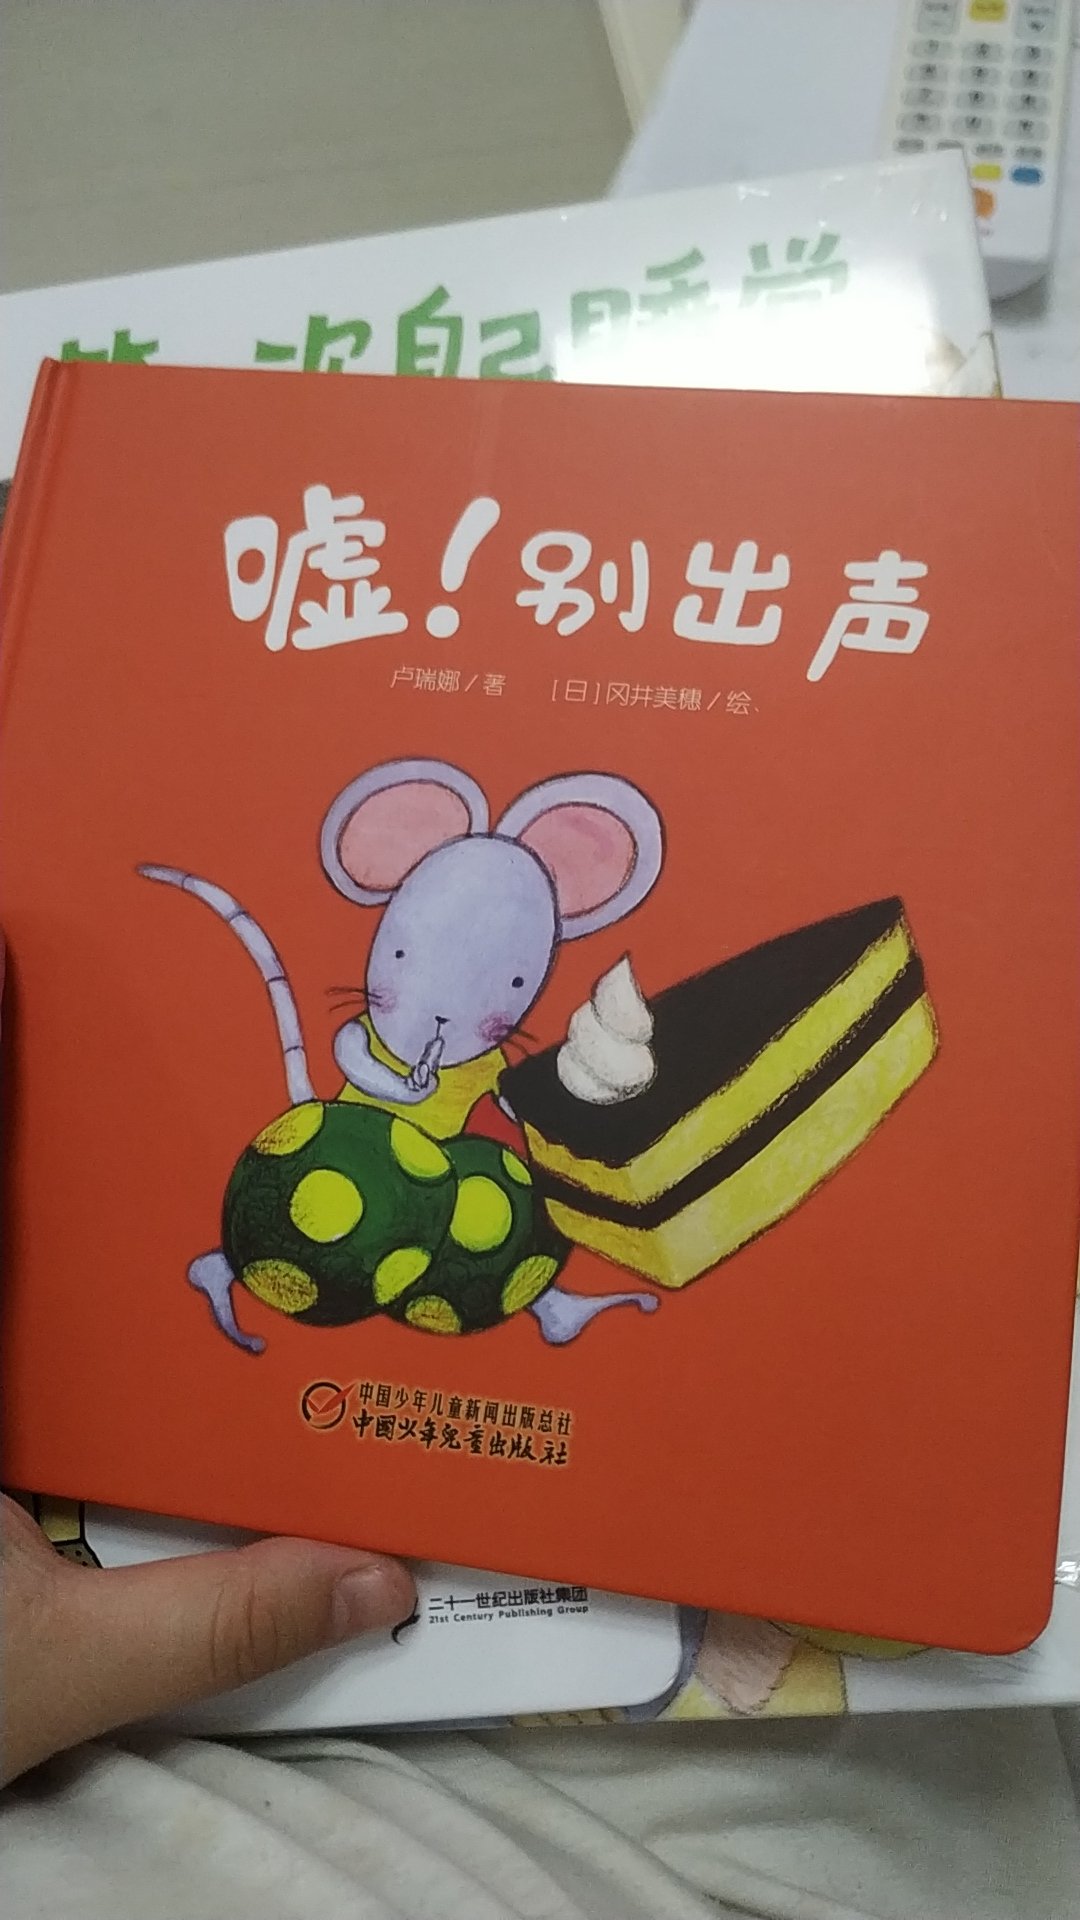 很赞的一本书，讲述小老鼠偷吃东西，遇到各种小动物，又学习了数字，很赞